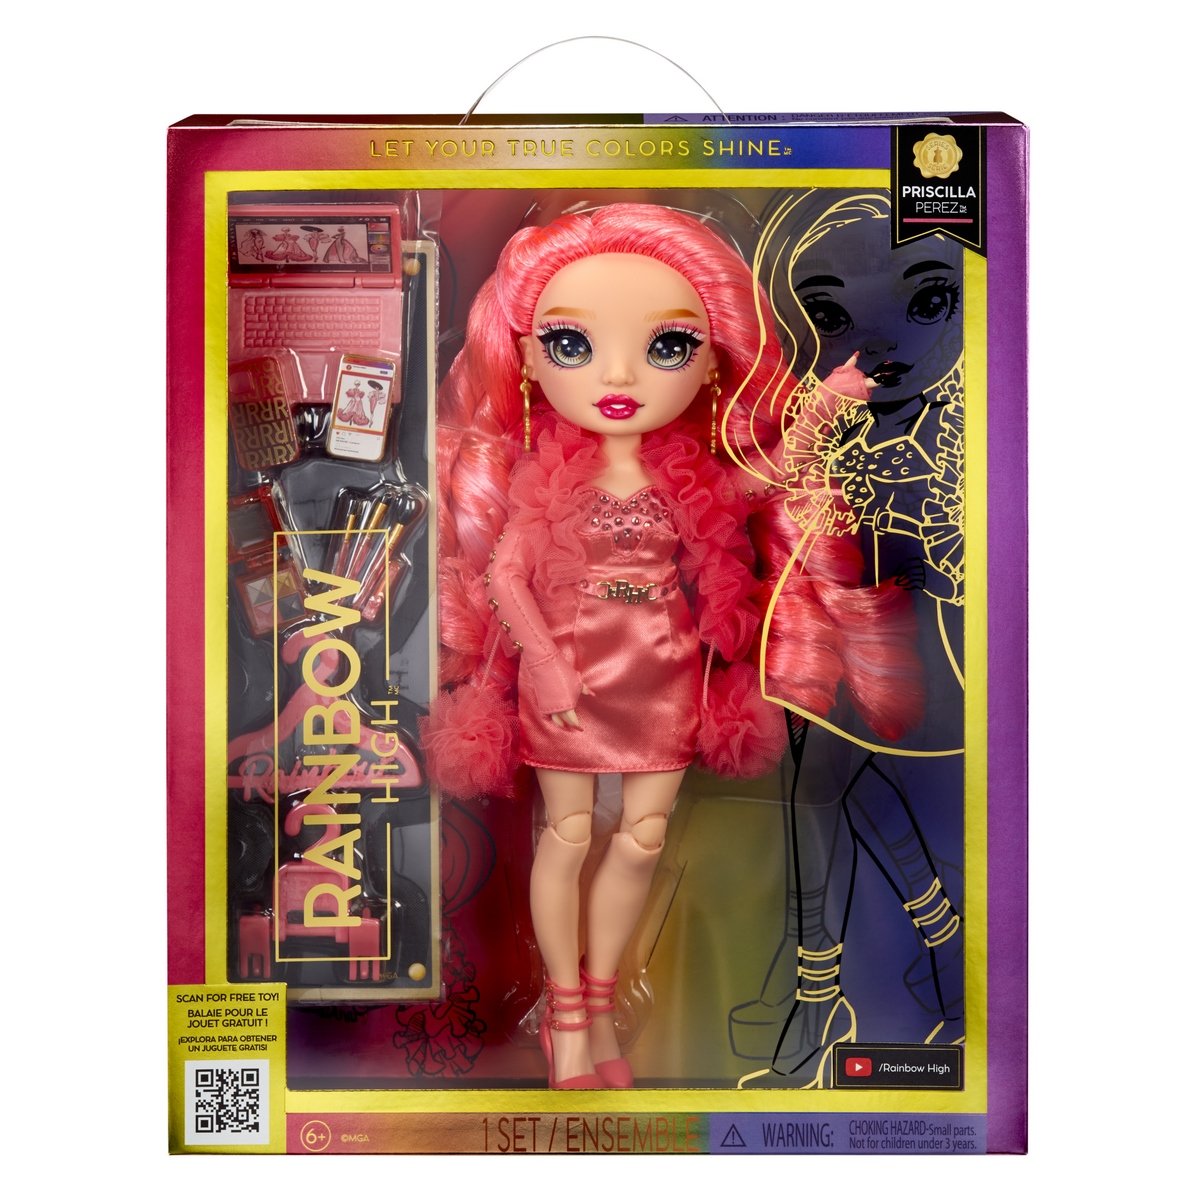 Poupée Rainbow High Fashion Doll FP Pink - La Grande Récré